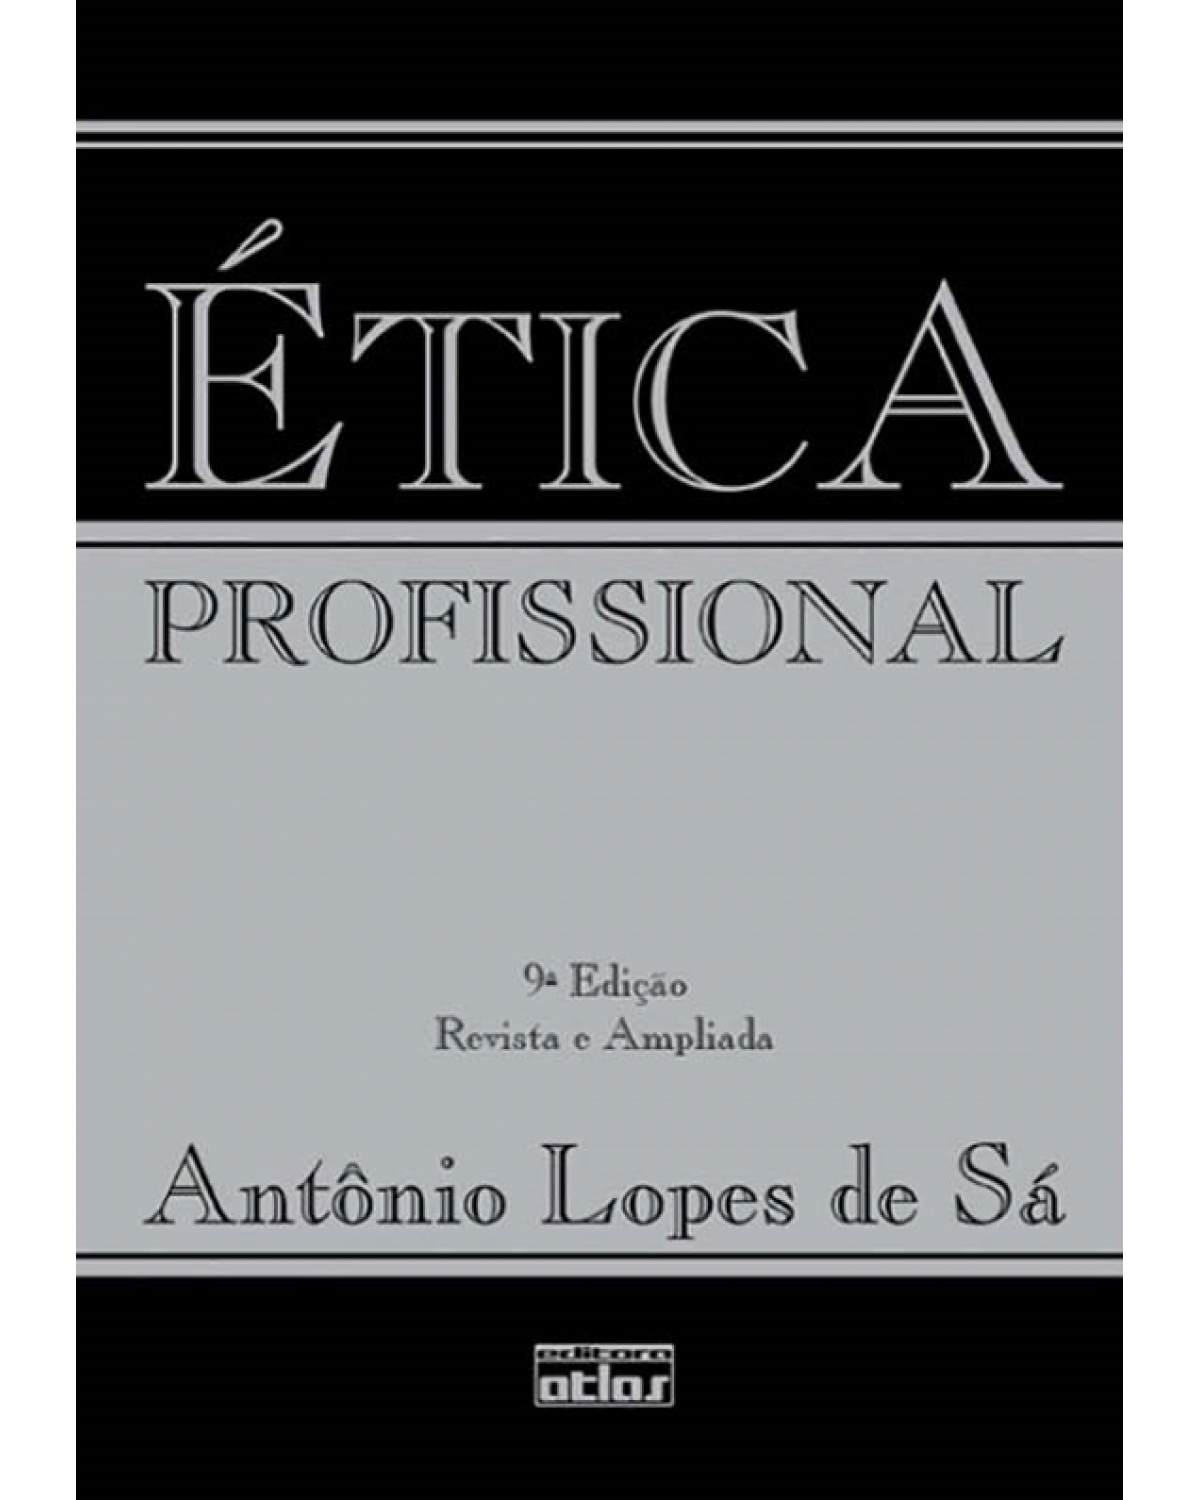 Ética profissional - 9ª Edição | 2009